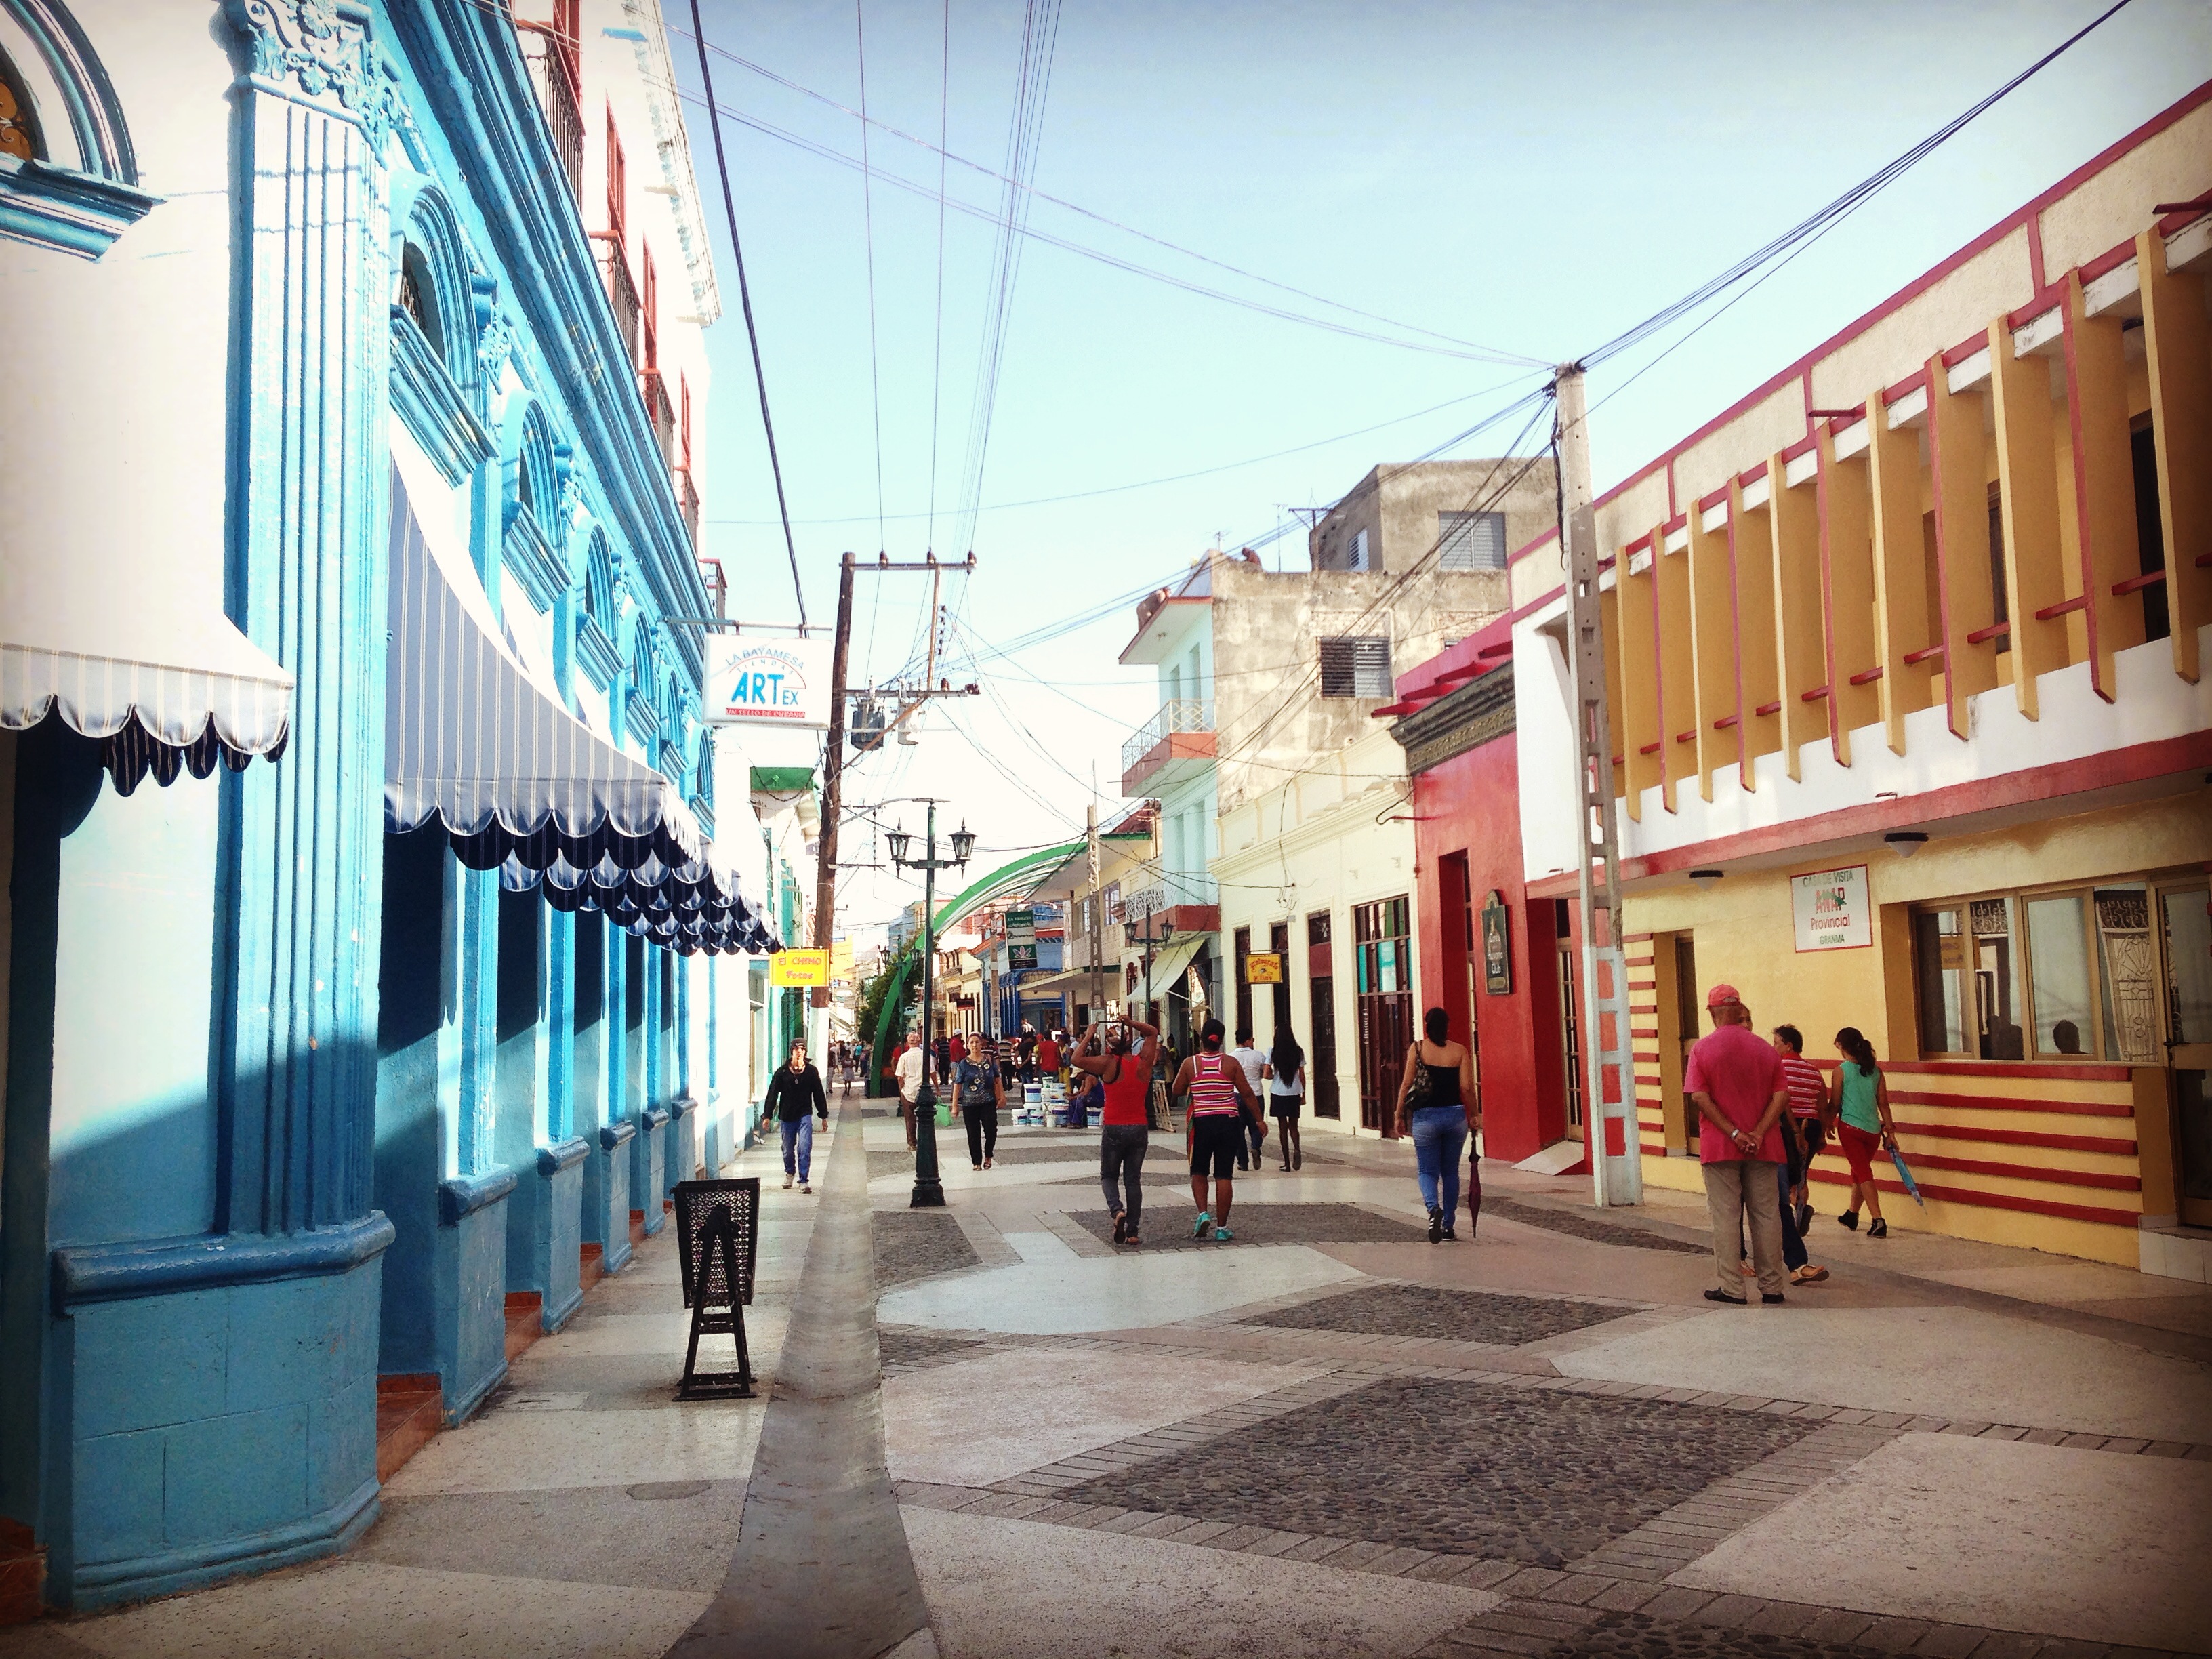 Boulevard en la ciudad de Bayamo, fundada en 1513 por Diego Velázquez como la segunda Villa en la isla, después de Baracoa. En Bayamo fue escrito el himno nacional de Cuba y se cantó por primera vez en 1868.